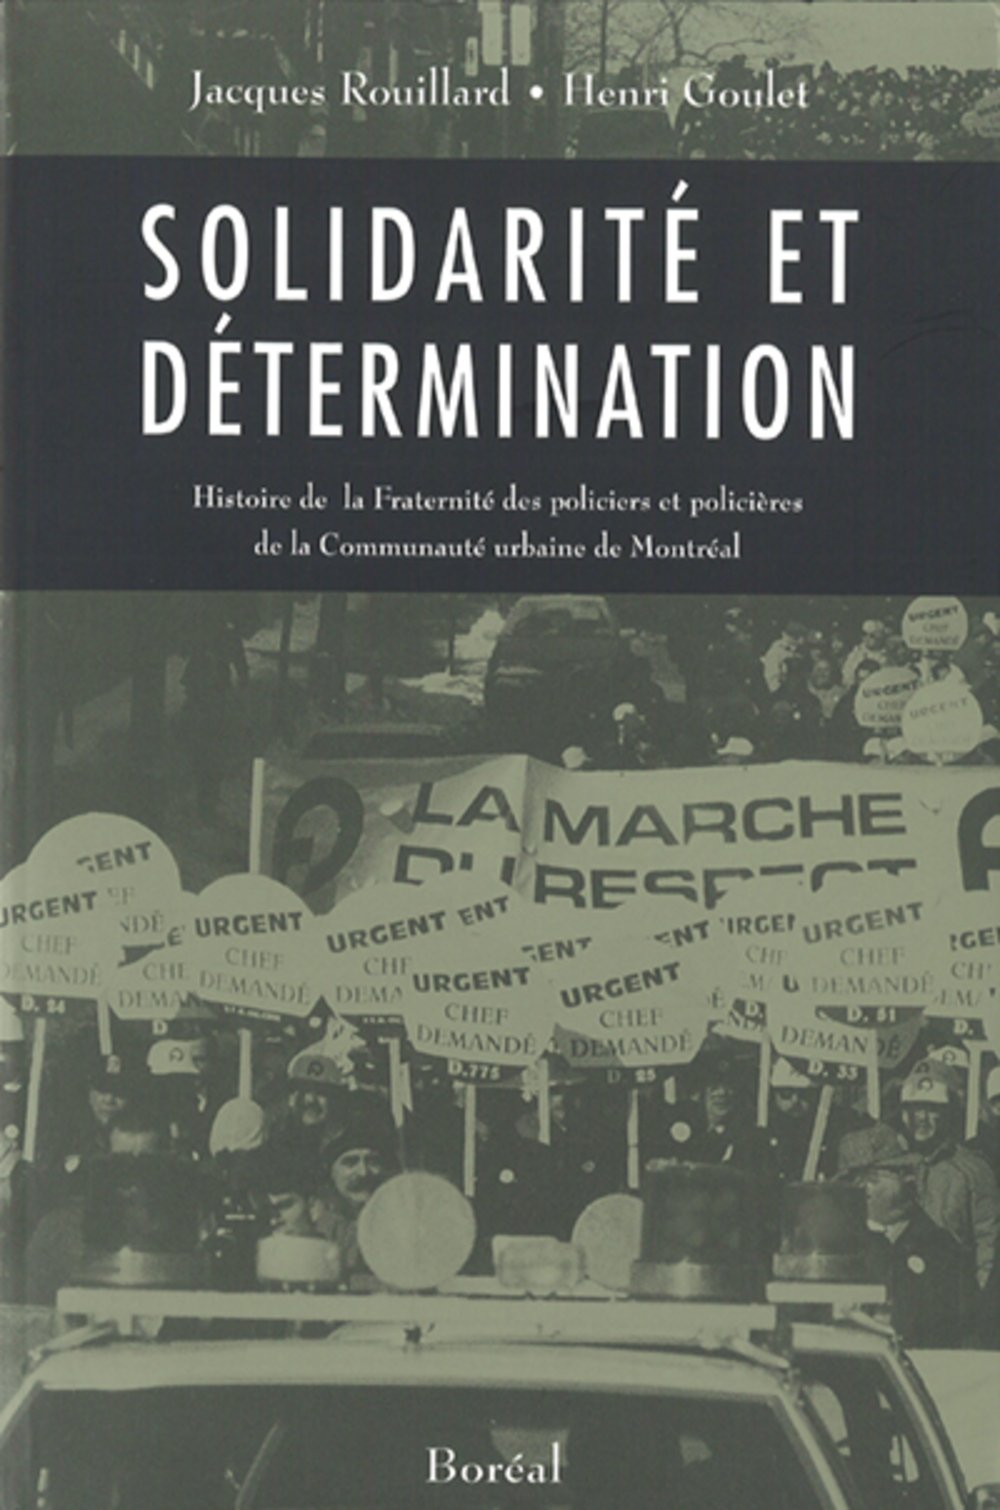 Livre ISBN 2890529584 Solidarité et détermination : Histoire de la Fraternité des policiers et policières de la Communauté urbaine de Montréal (Jacques Rouillard)